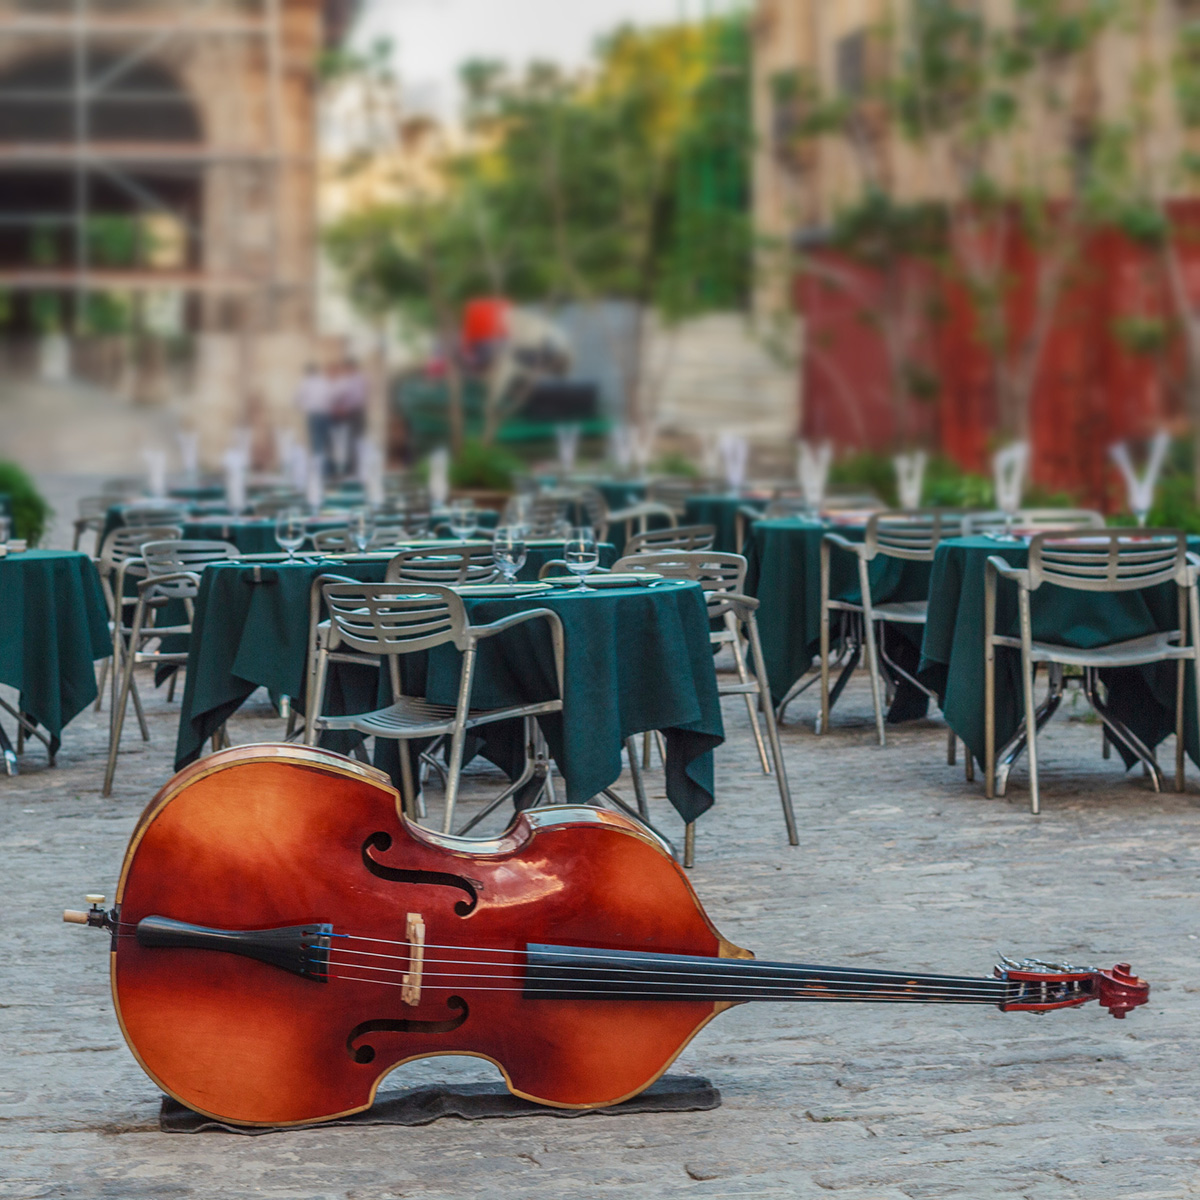 a cello sitting in a cobblestone square